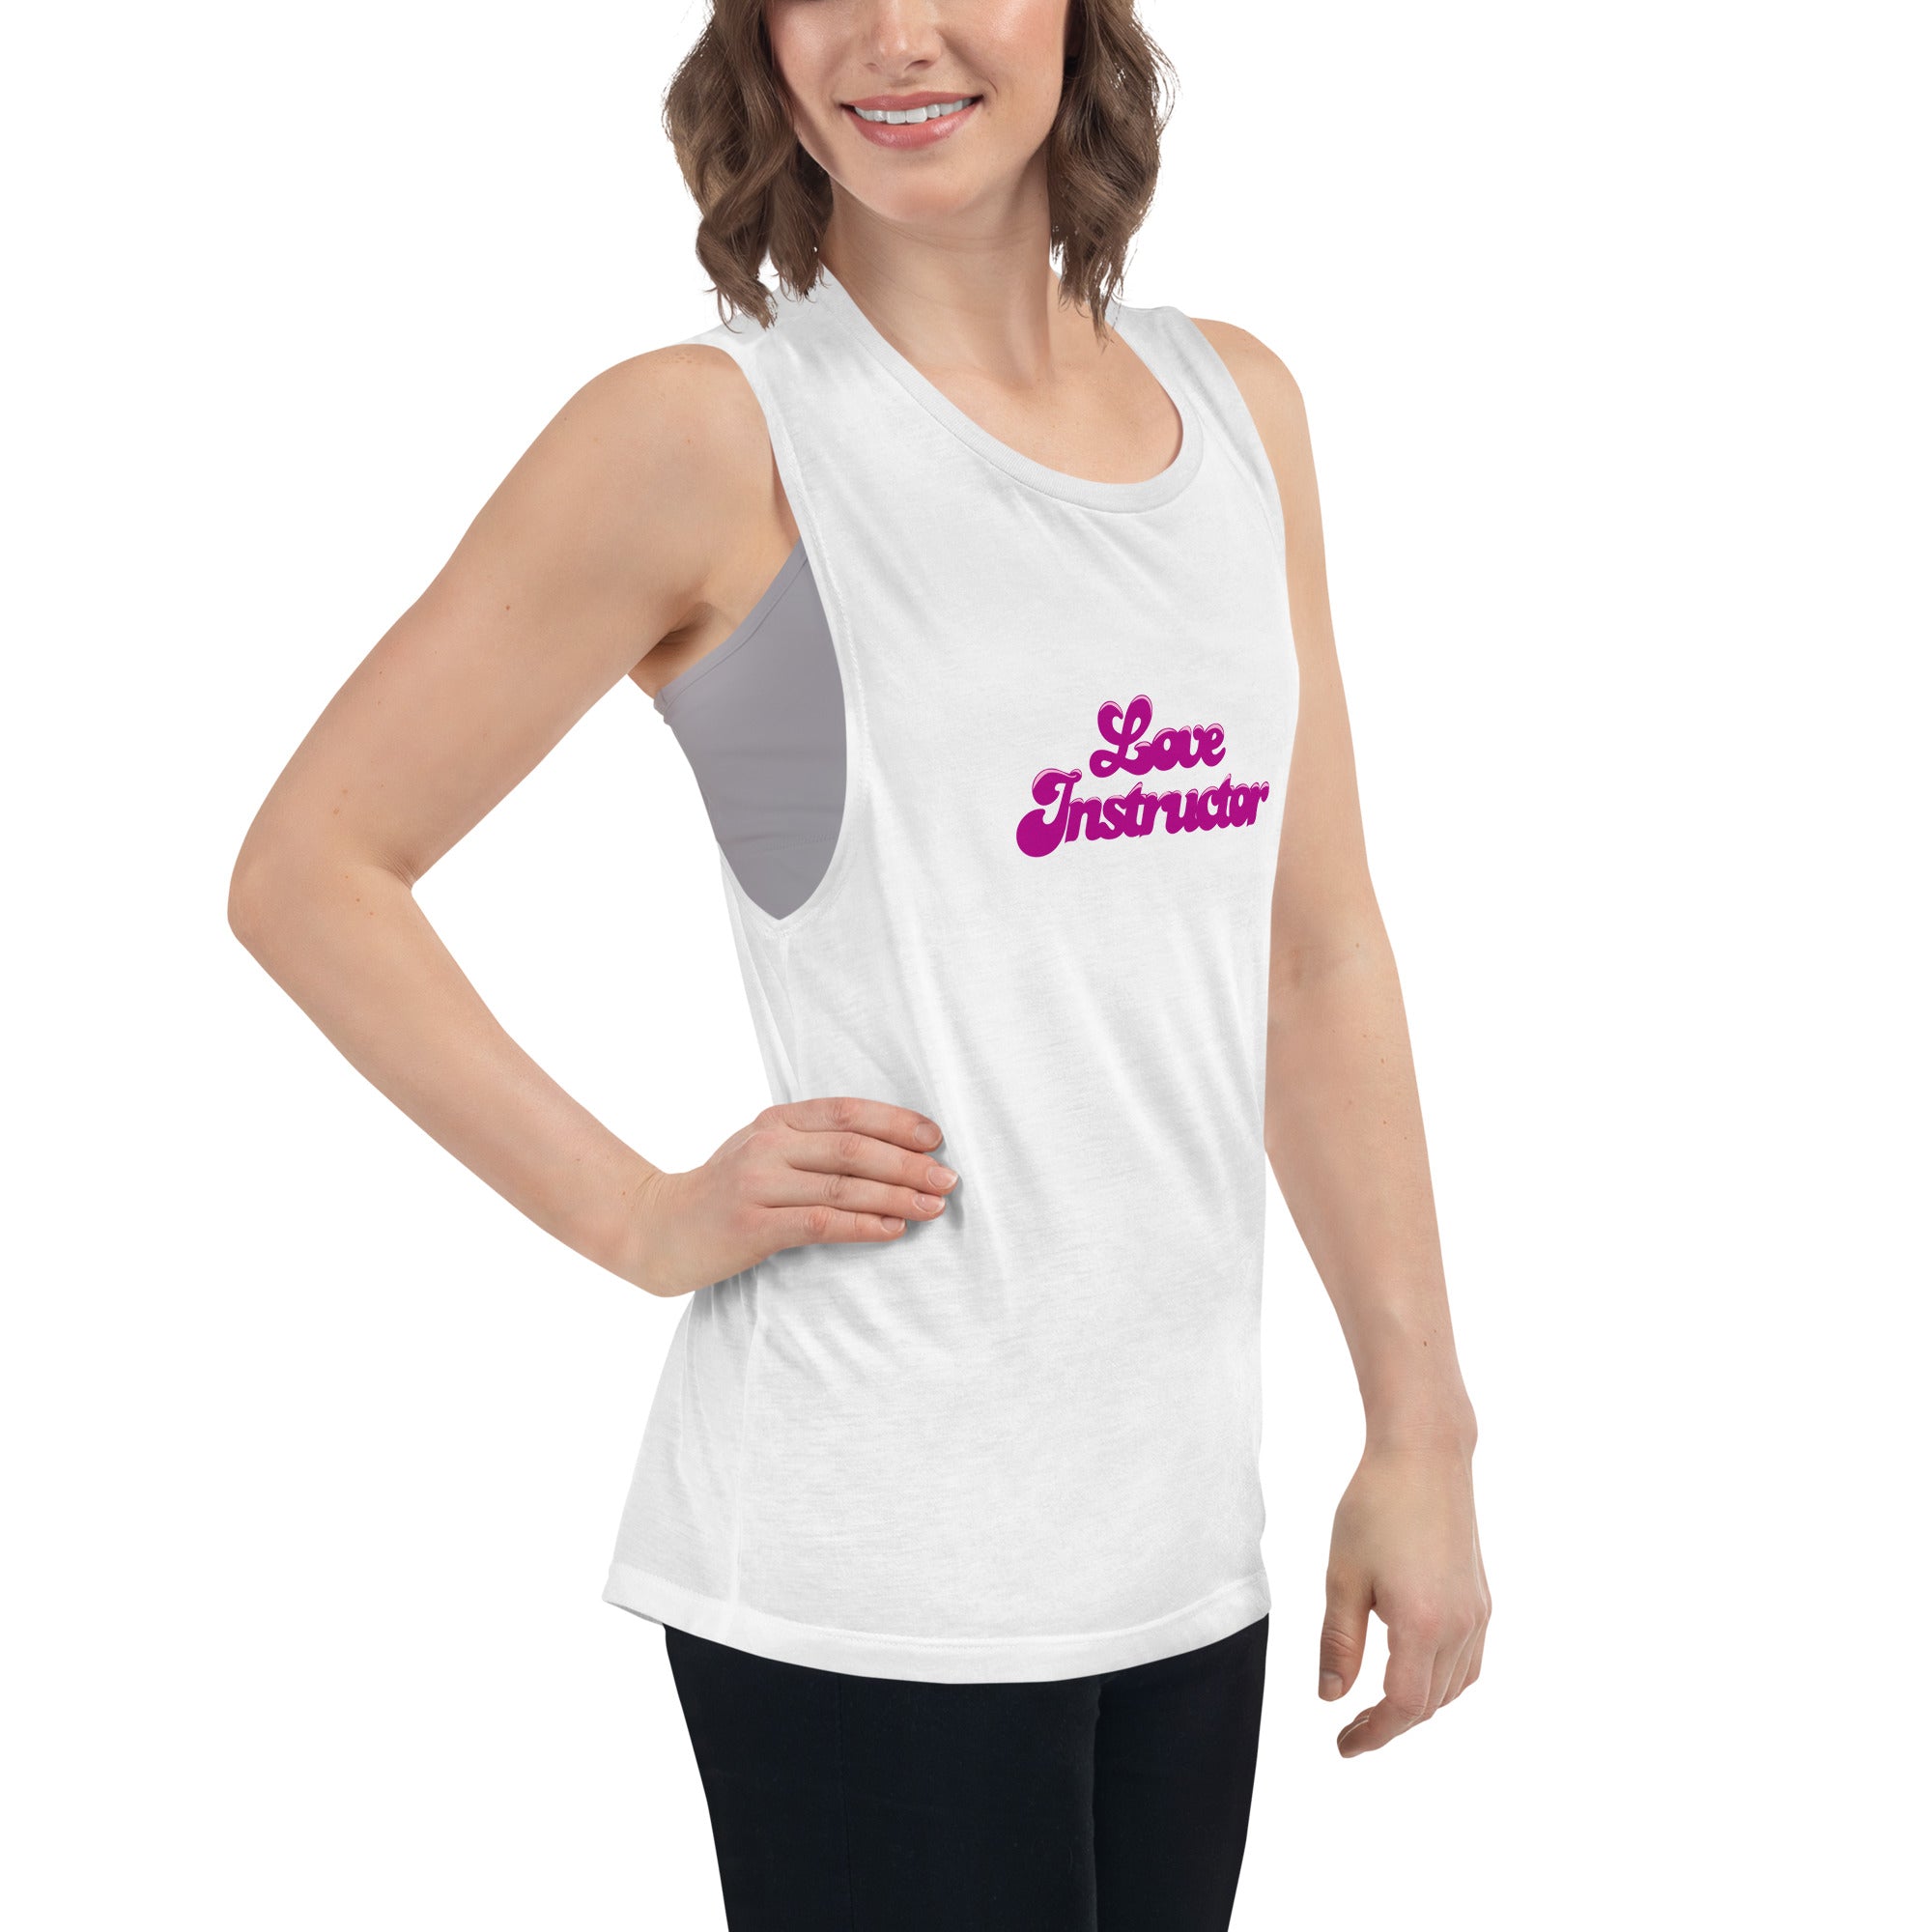 T-Shirt sans manches pour Femme Love instructor